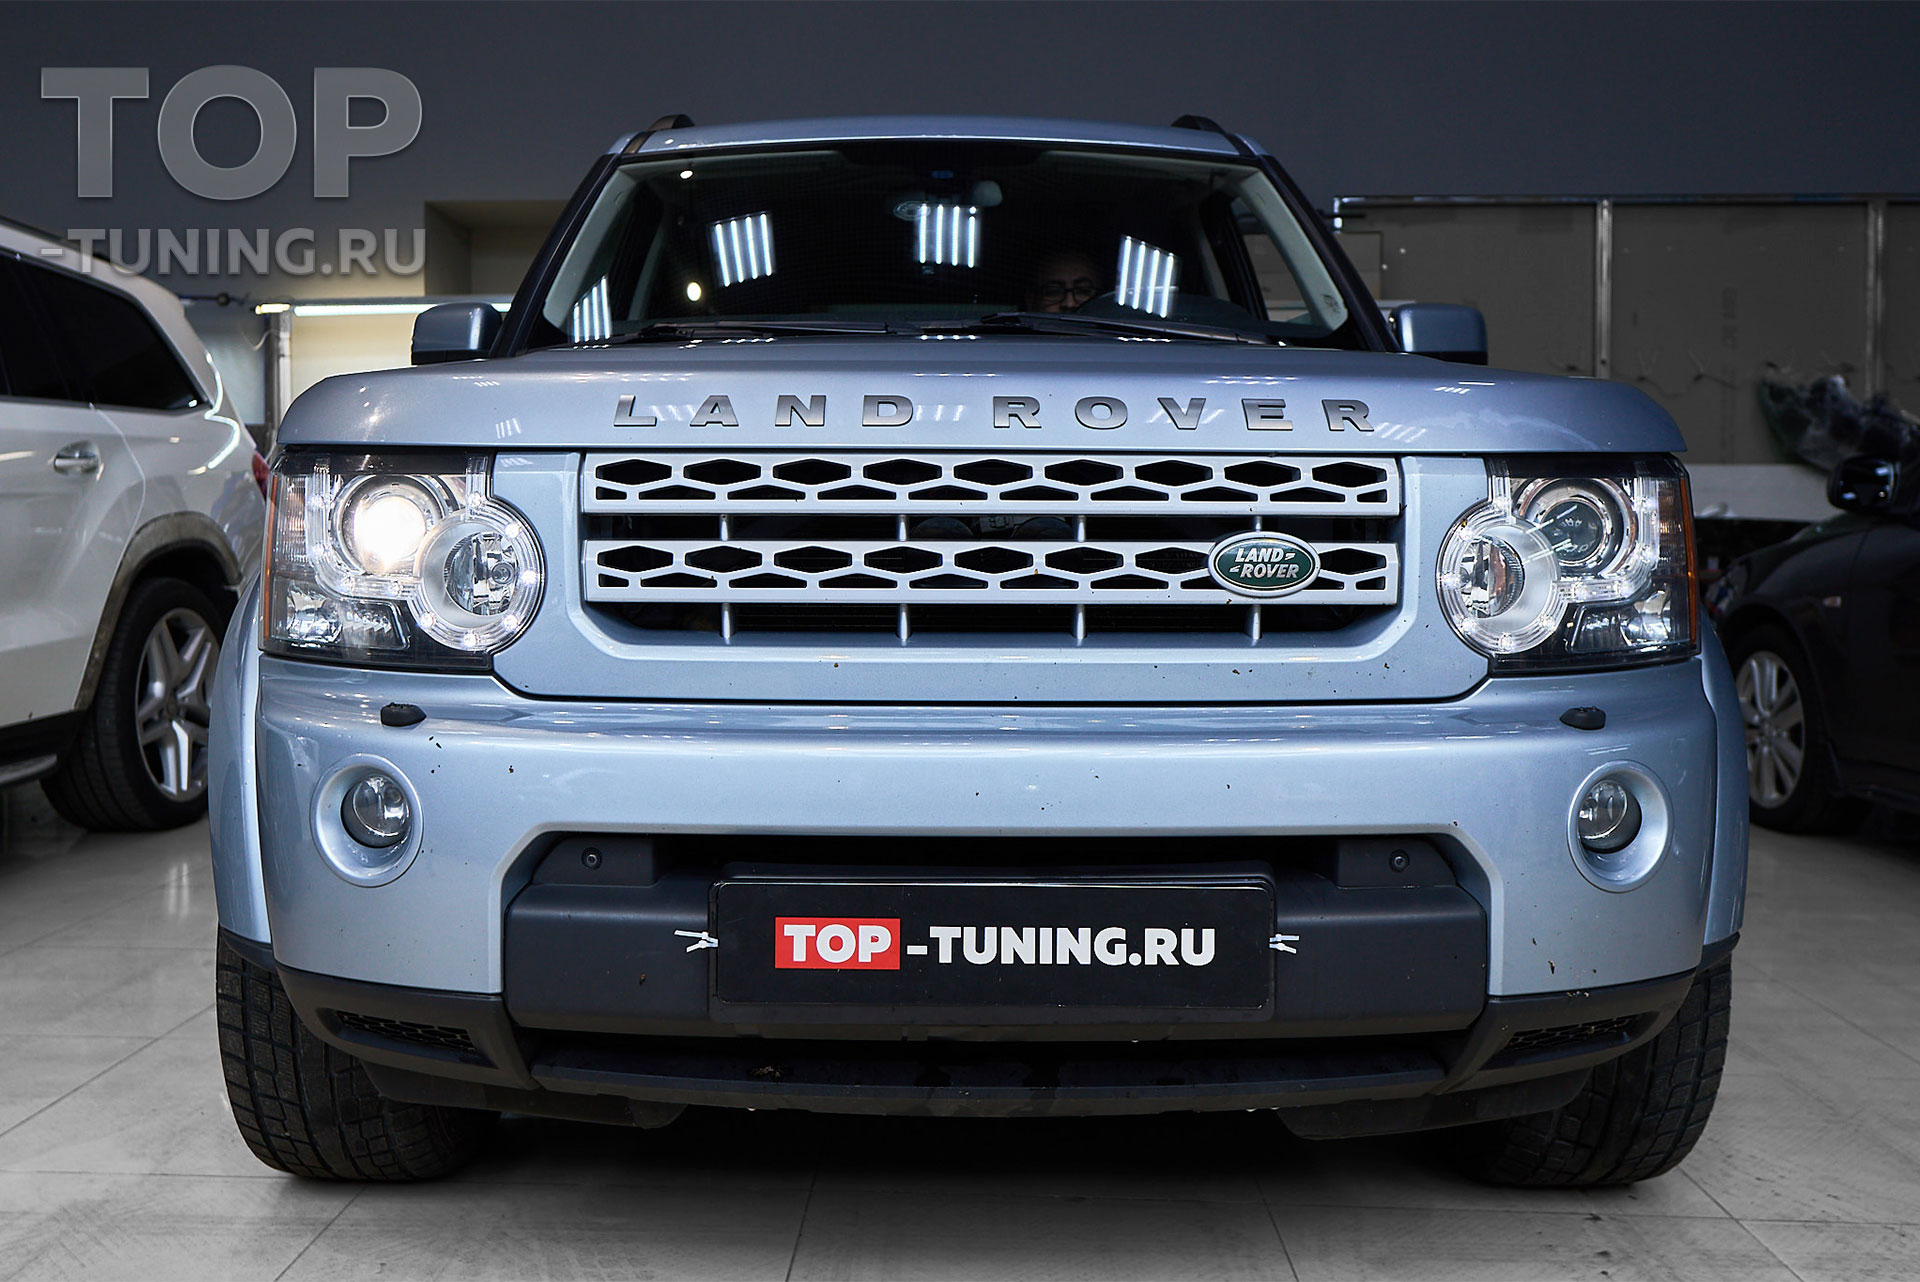 108251 Улучшить освещение фар Land Rover Discovery под ключ в Москве